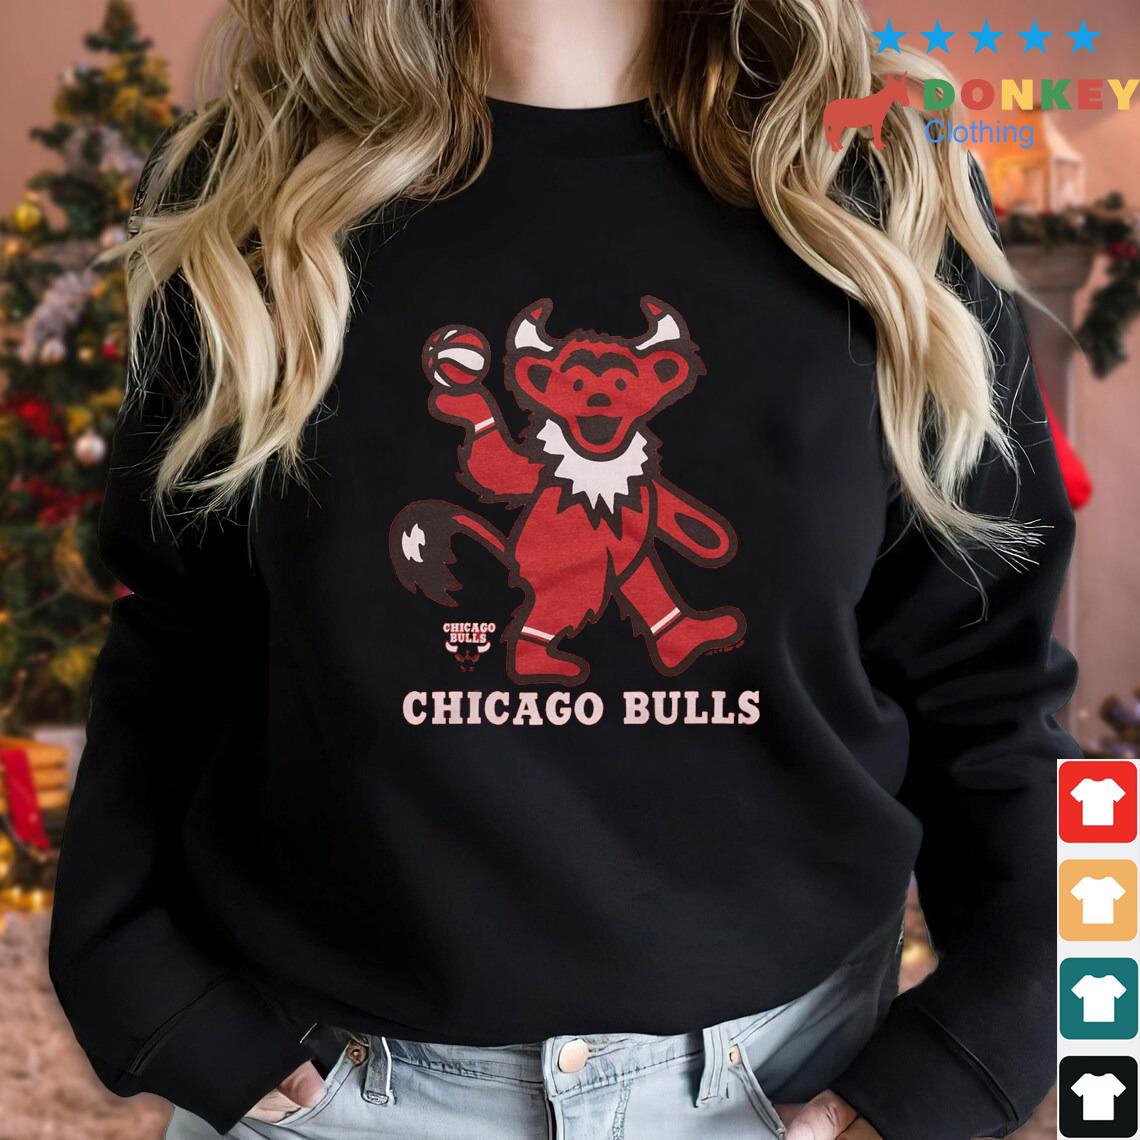 NBA x Grateful Dead x Chicago Bulls Shirt